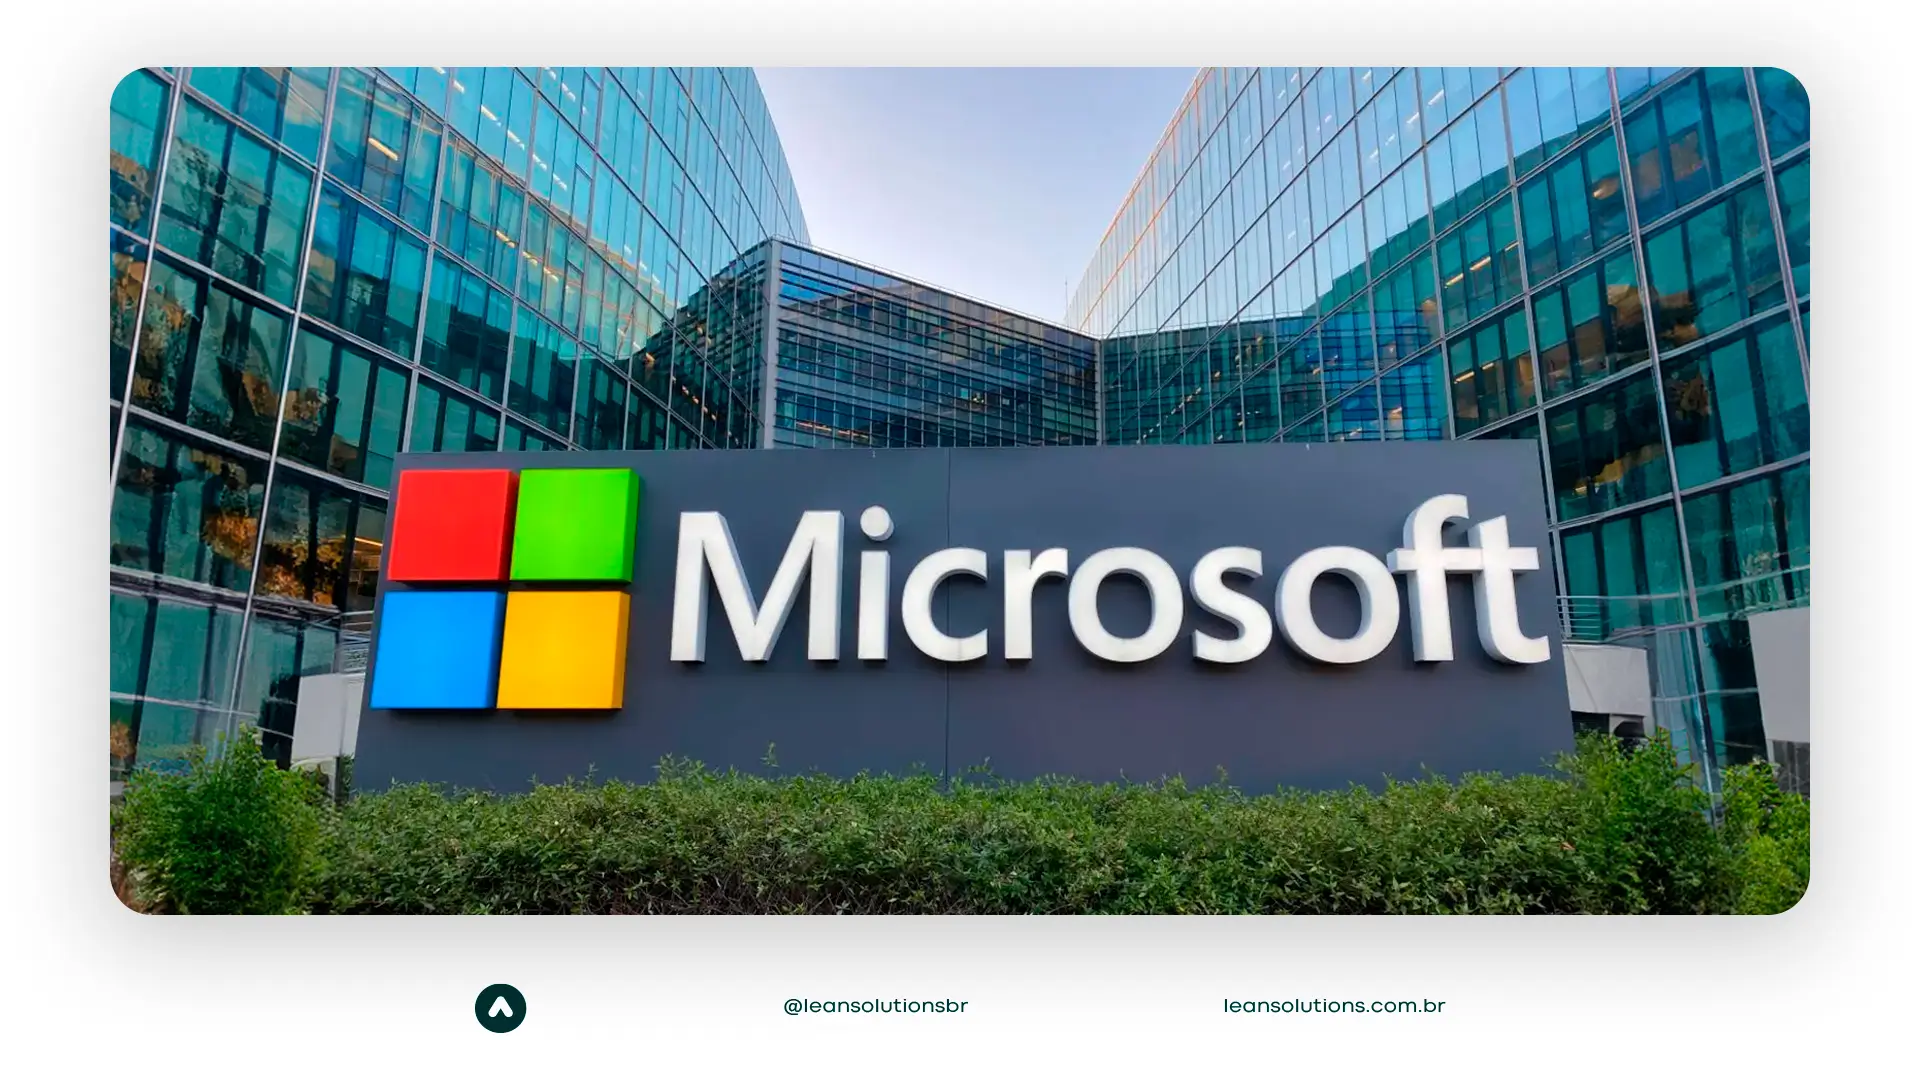 Conheça a história e o legado da Microsoft